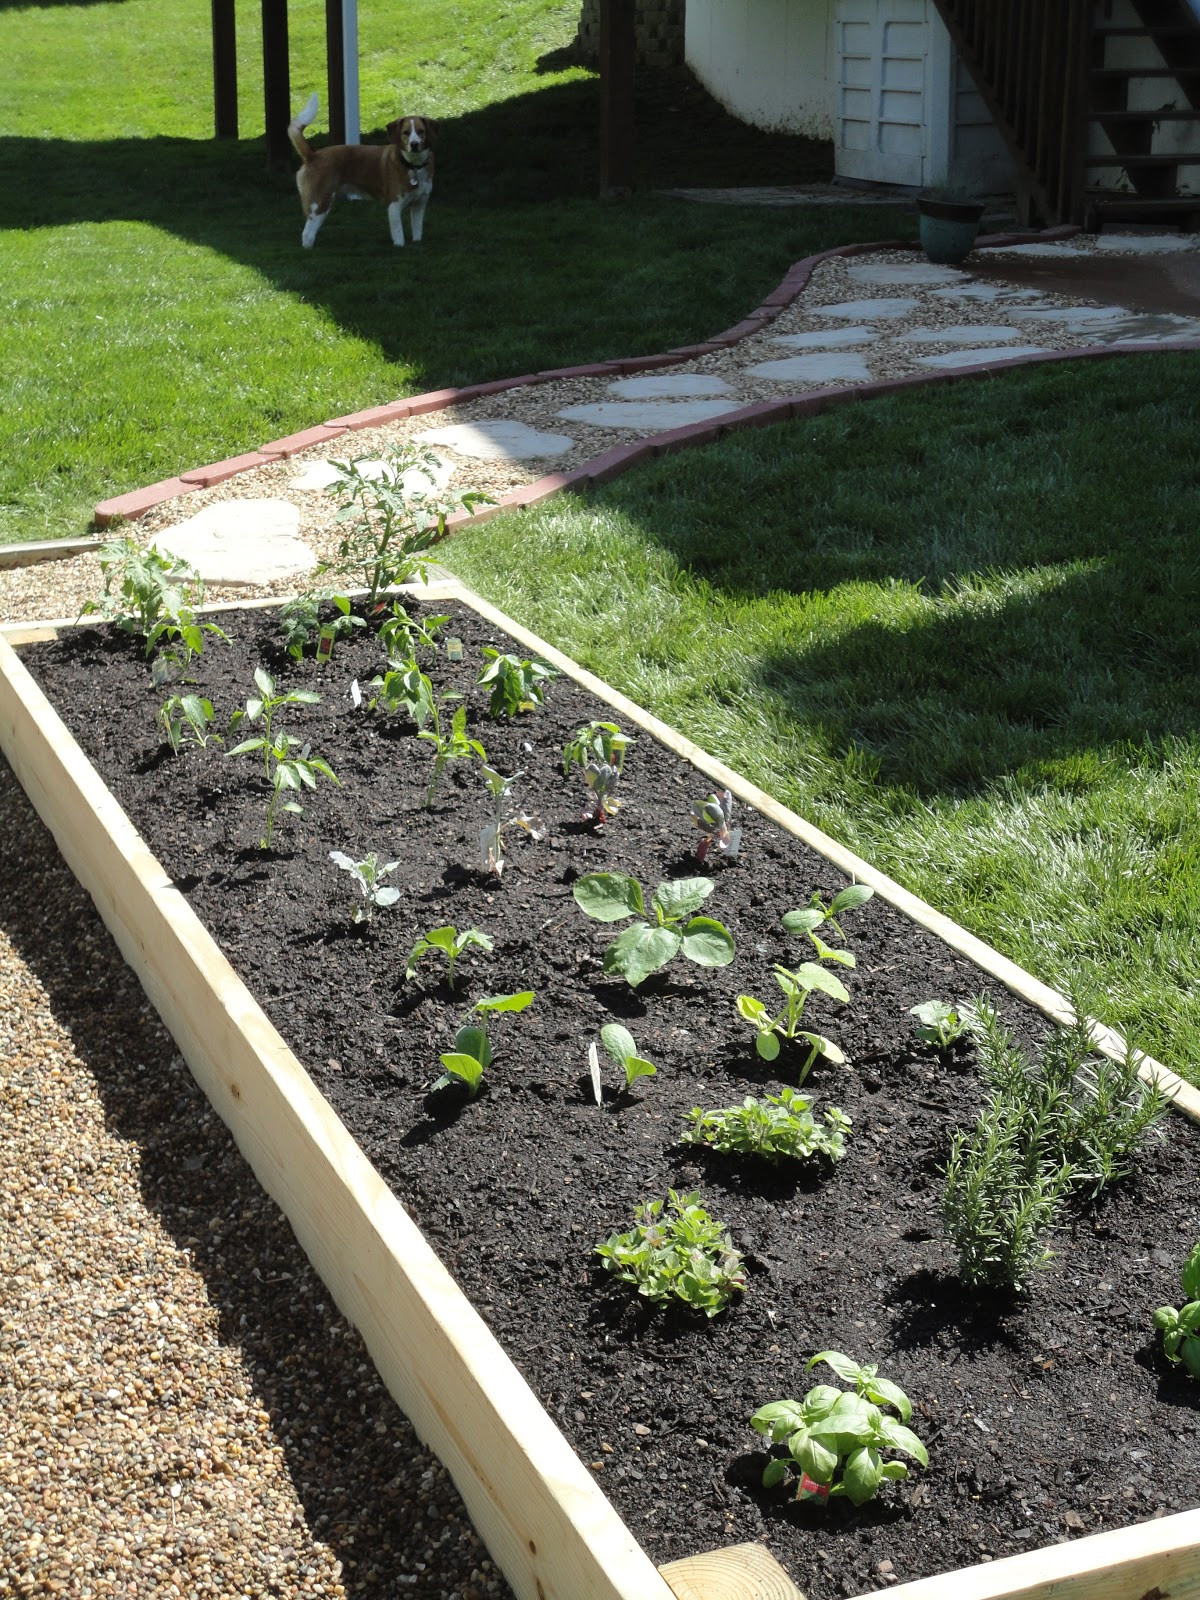 Best ideas about DIY Raised Garden
. Save or Pin Vanilla Bean DIY Raised Garden Bed Now.